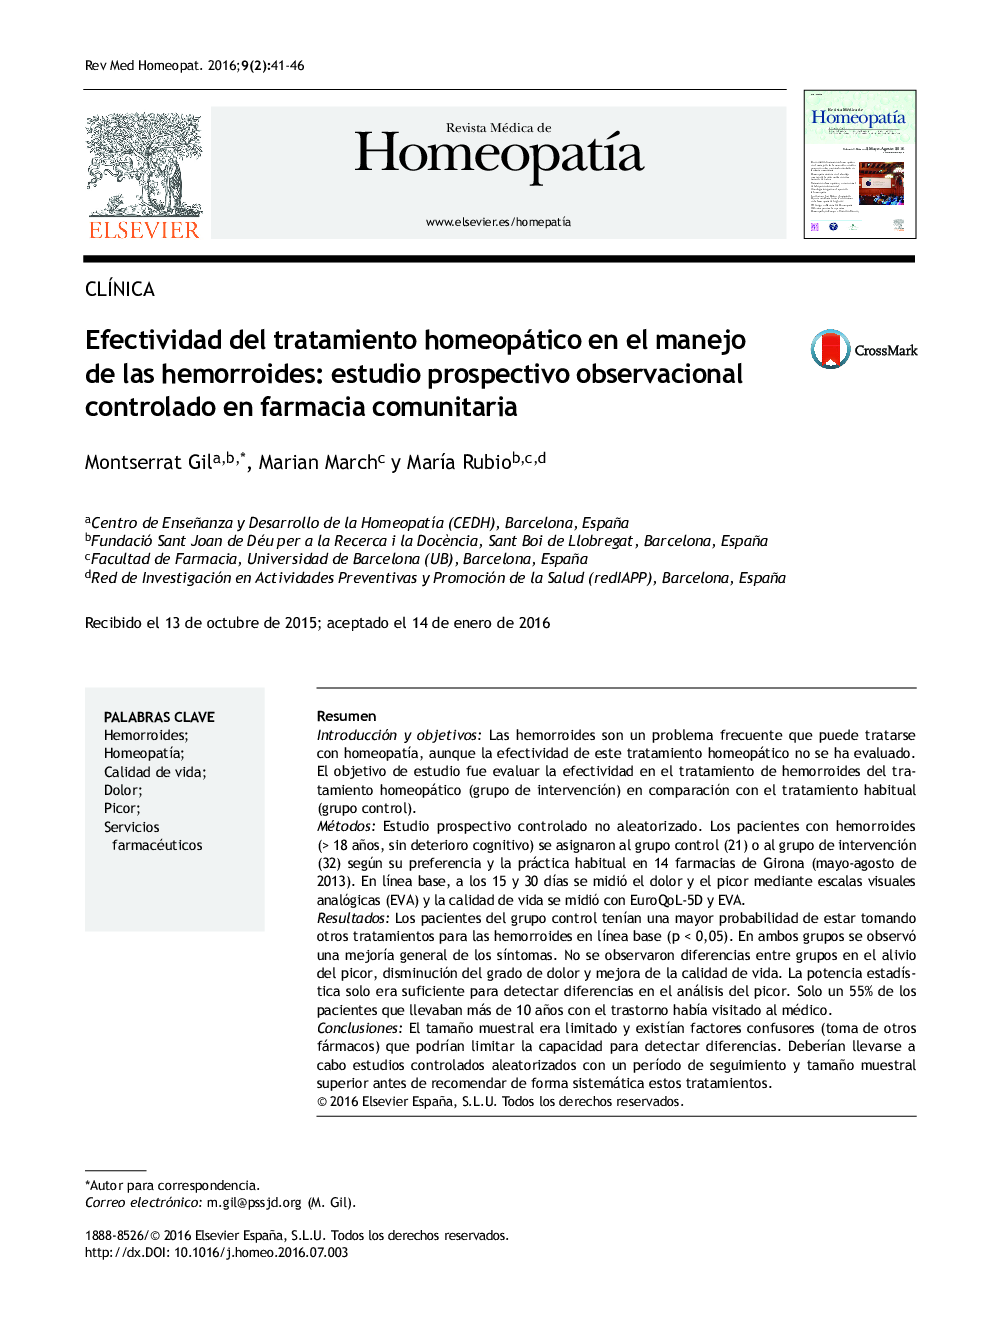 Efectividad del tratamiento homeopático en el manejo de las hemorroides: estudio prospectivo observacional controlado en farmacia comunitaria